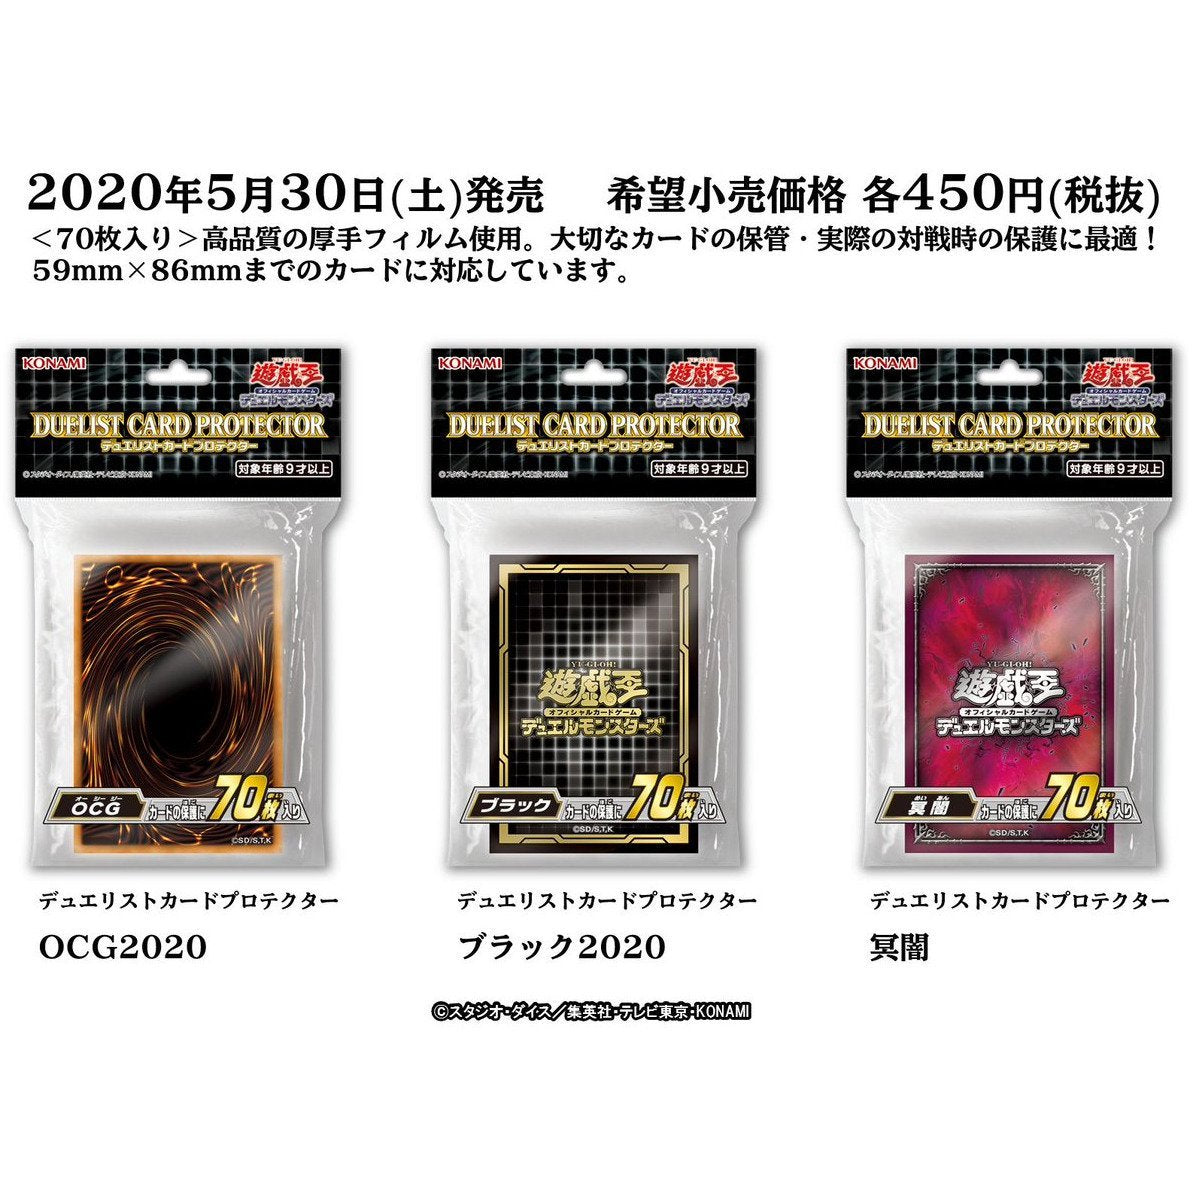 Yu-Gi-Oh! OCG Duelist Card Protector "OCG 2020"-Konami-Ace Cards & Collectibles